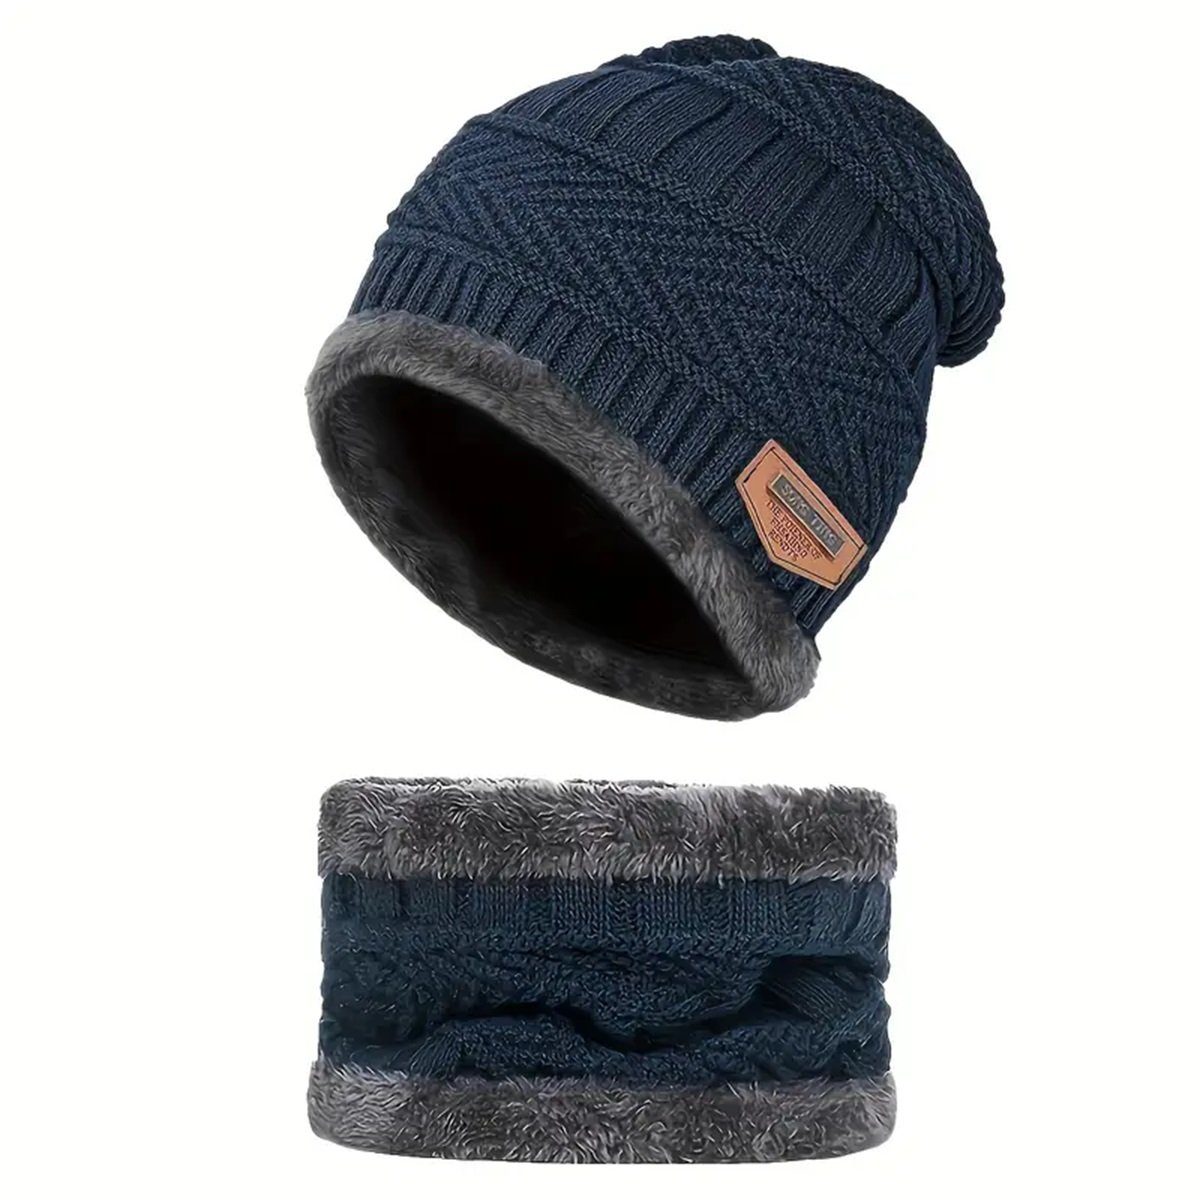 Selef Creation Mütze & Schal Warmes Beanie Mütze Schal Set für Winter, Gefüttert (2) Blau